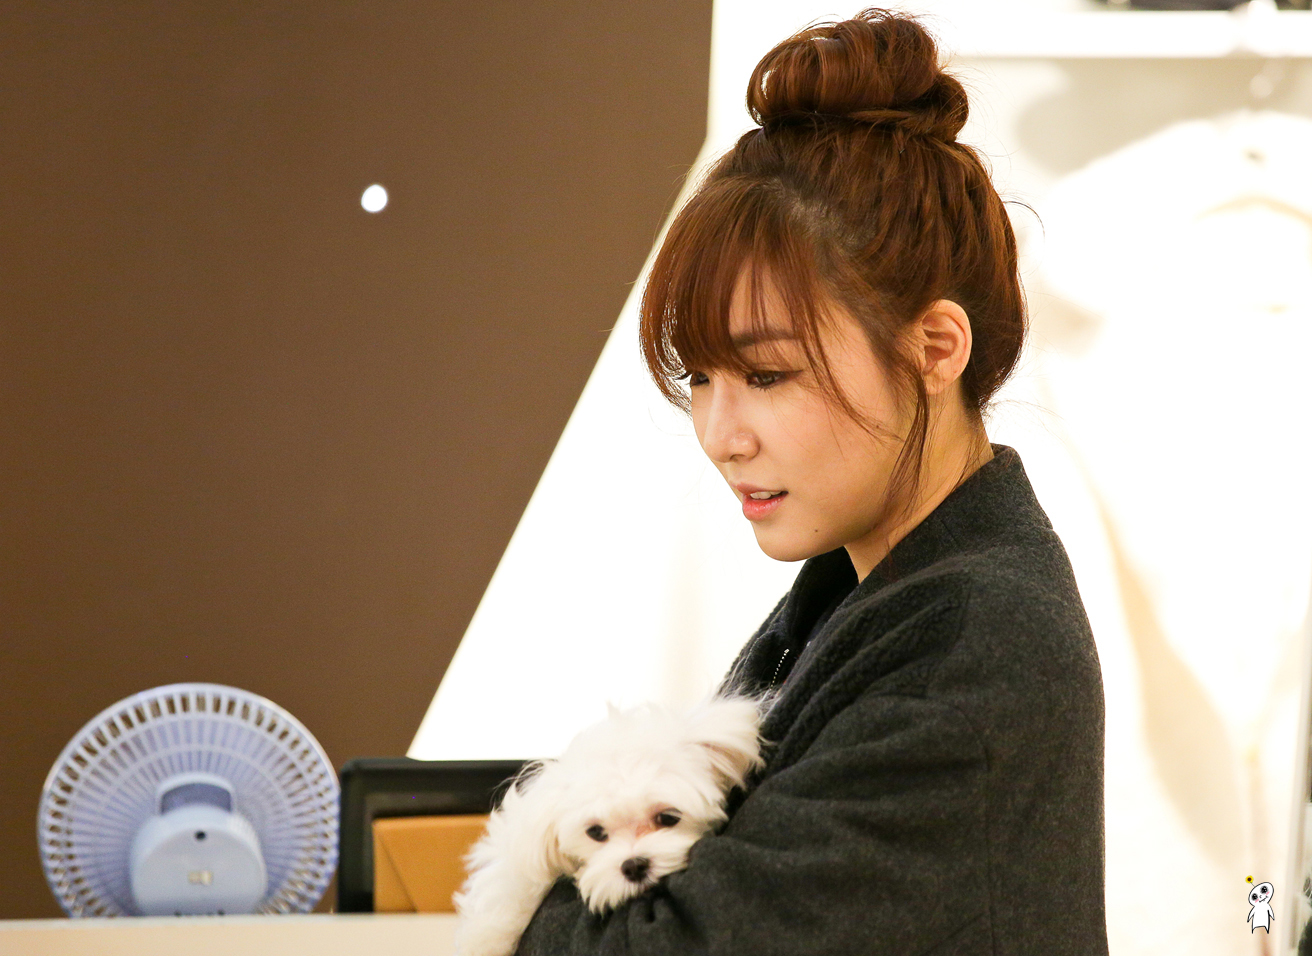 [PIC][28-11-2013]Tiffany ghé thăm cửa hàng "QUA" ở Hyundai Department Store vào trưa nay - Page 3 244D8D4052980CB8336C97